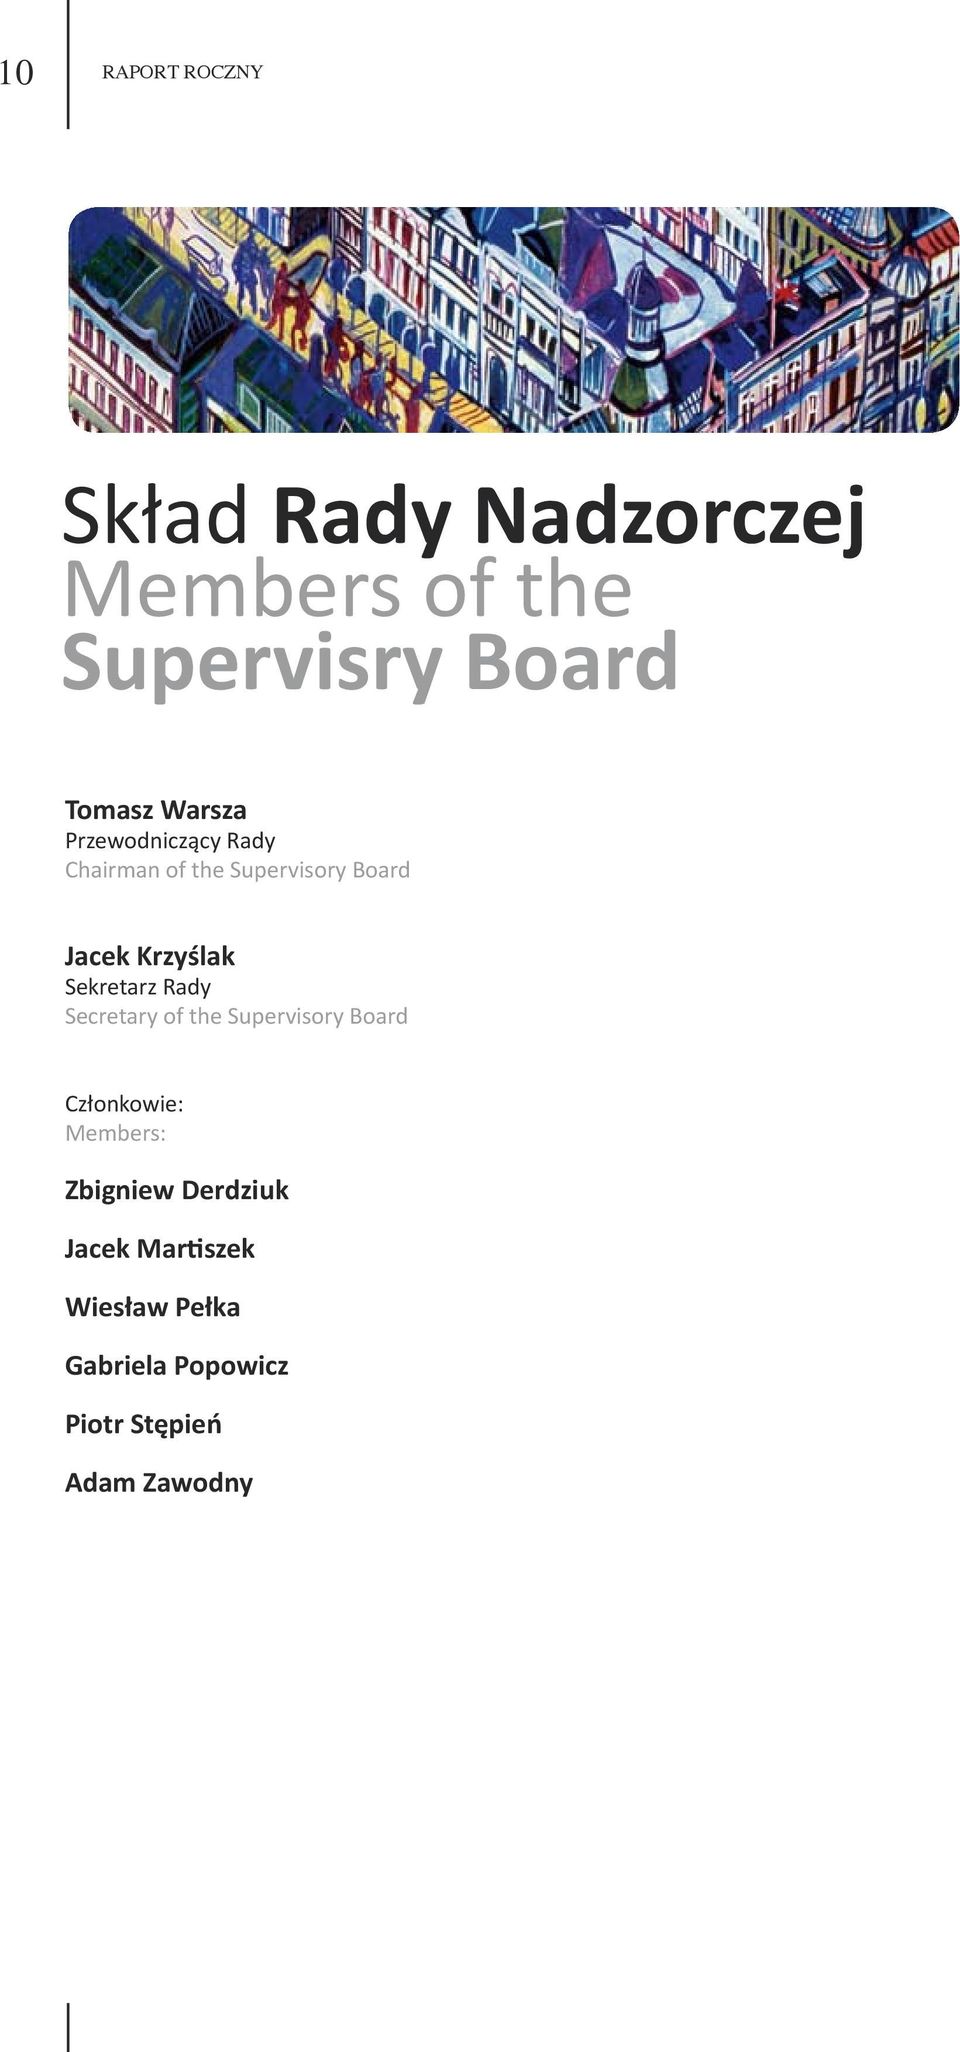 Sekretarz Rady Secretary of the Supervisory Board Członkowie: Members: Zbigniew